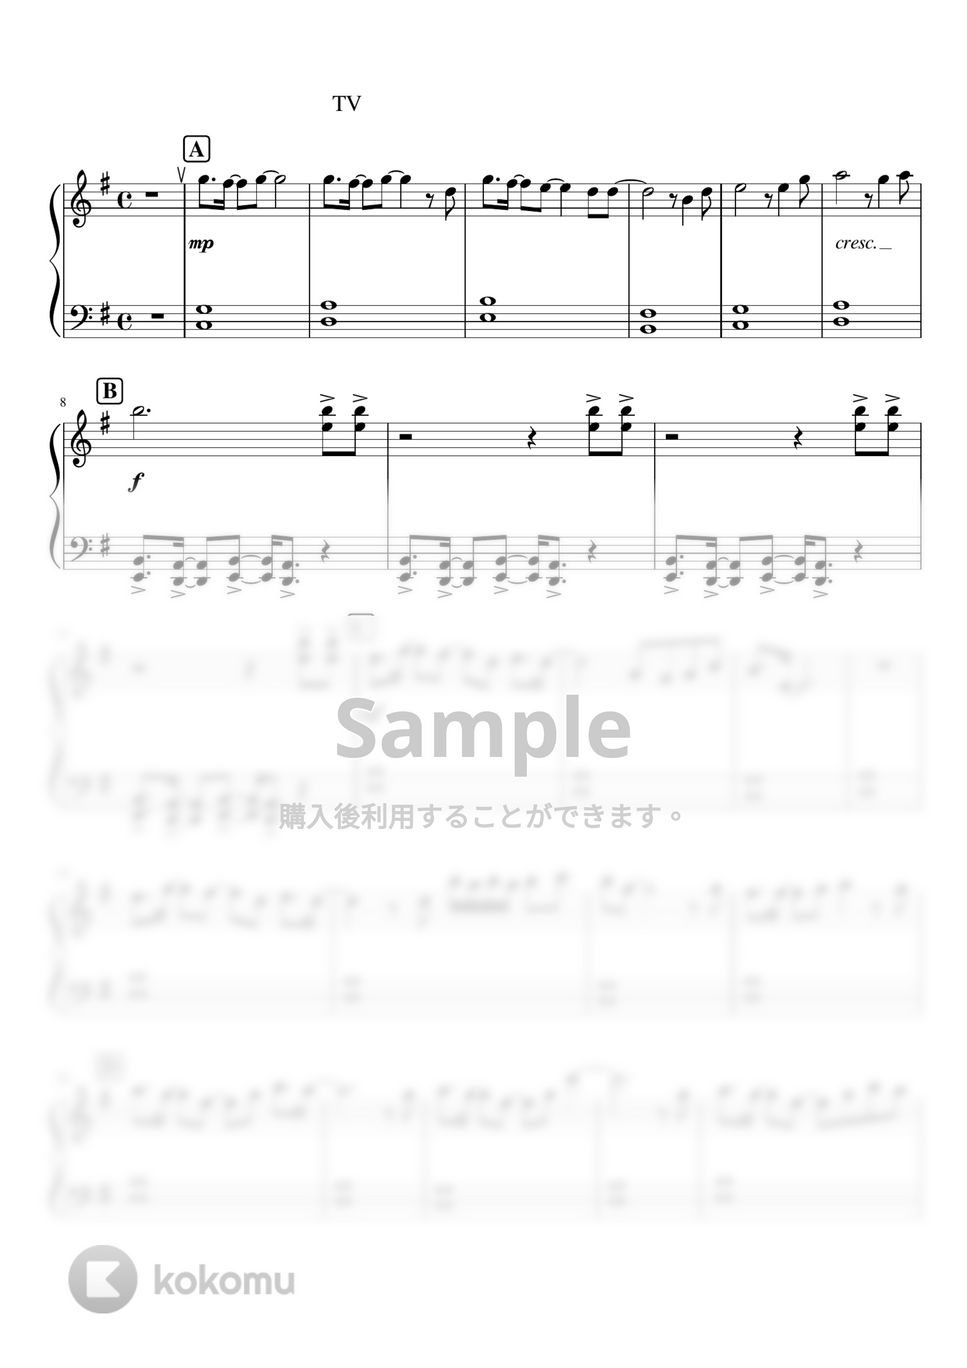 鬼滅の刃 - 紅蓮華 (ピアノソロ初級レッスン) by orinpia music